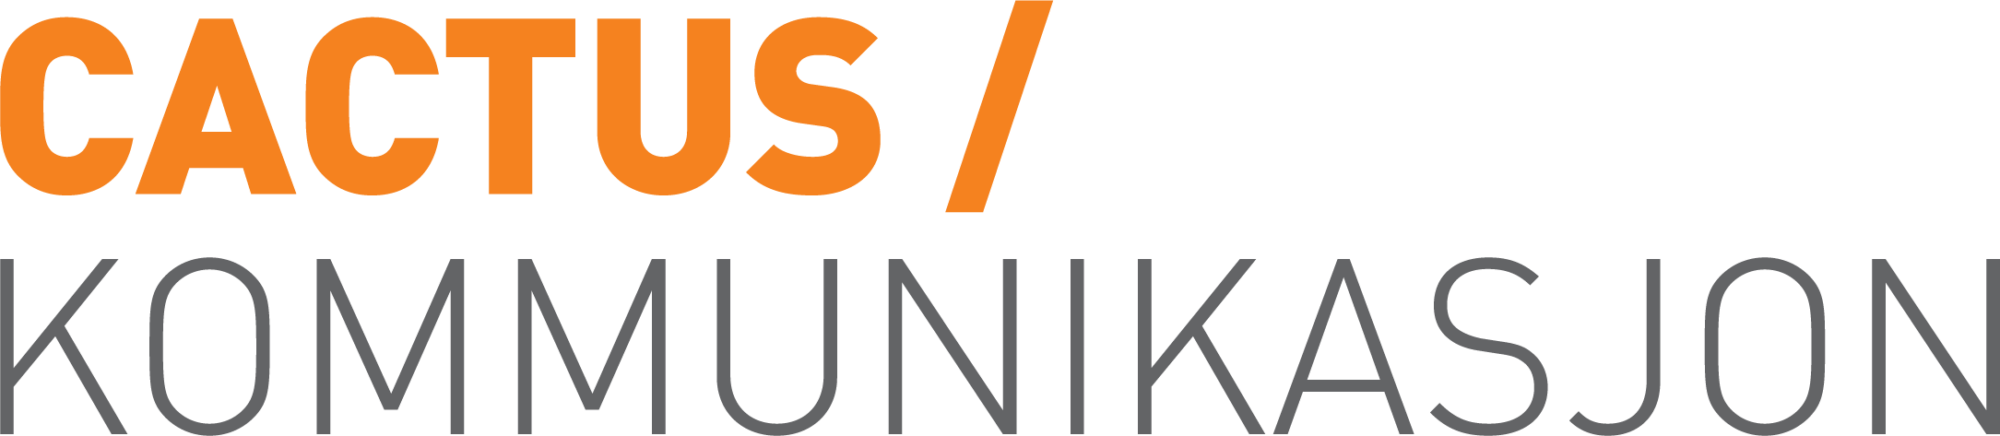 Cactus oransje logo